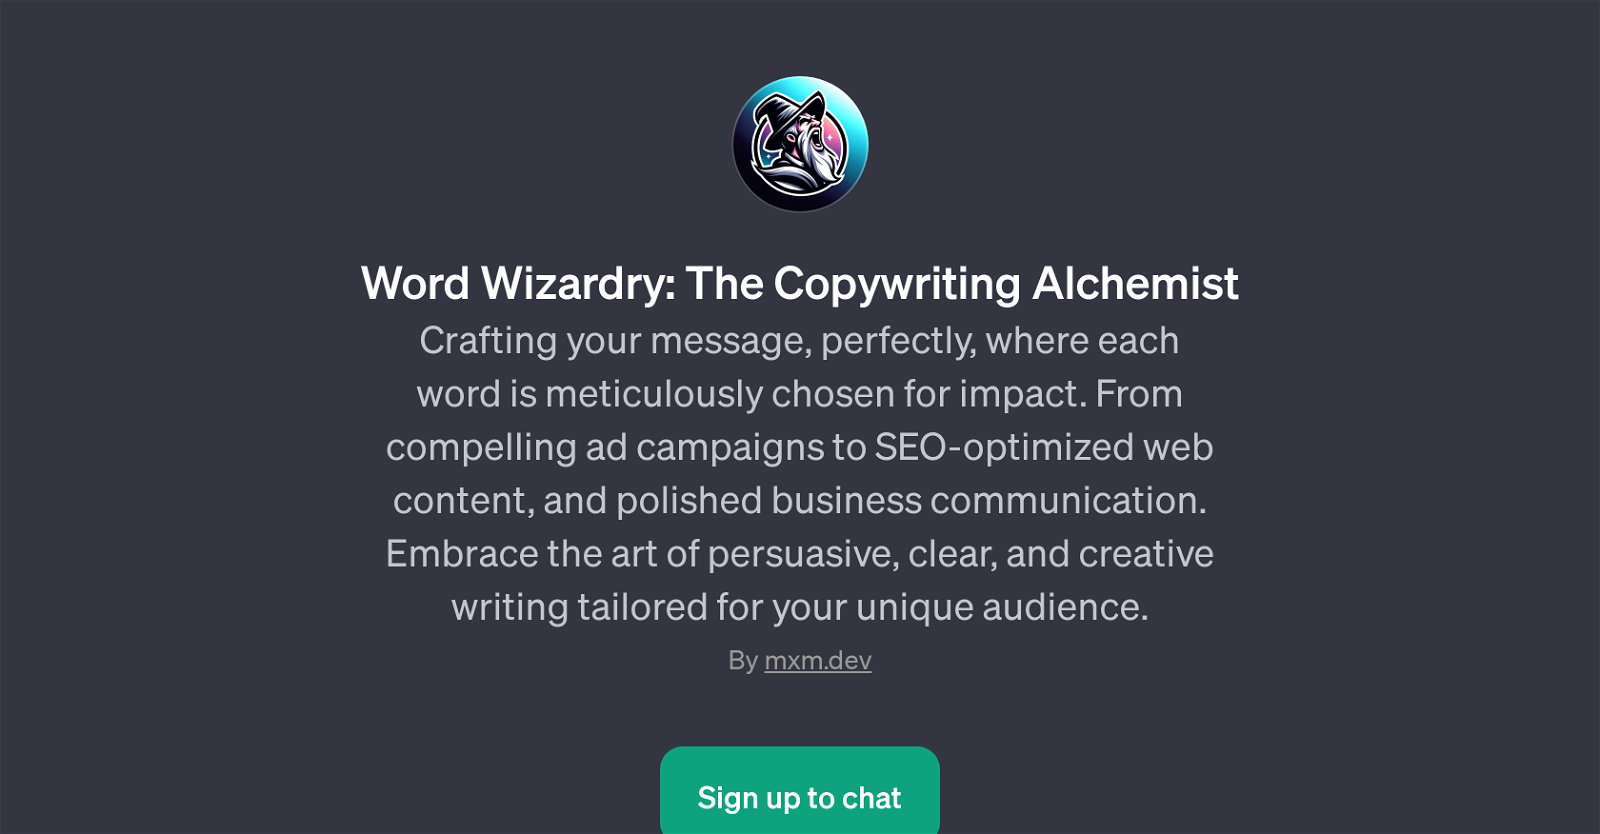 Word Wizardry: The Copywriting Alchemist website